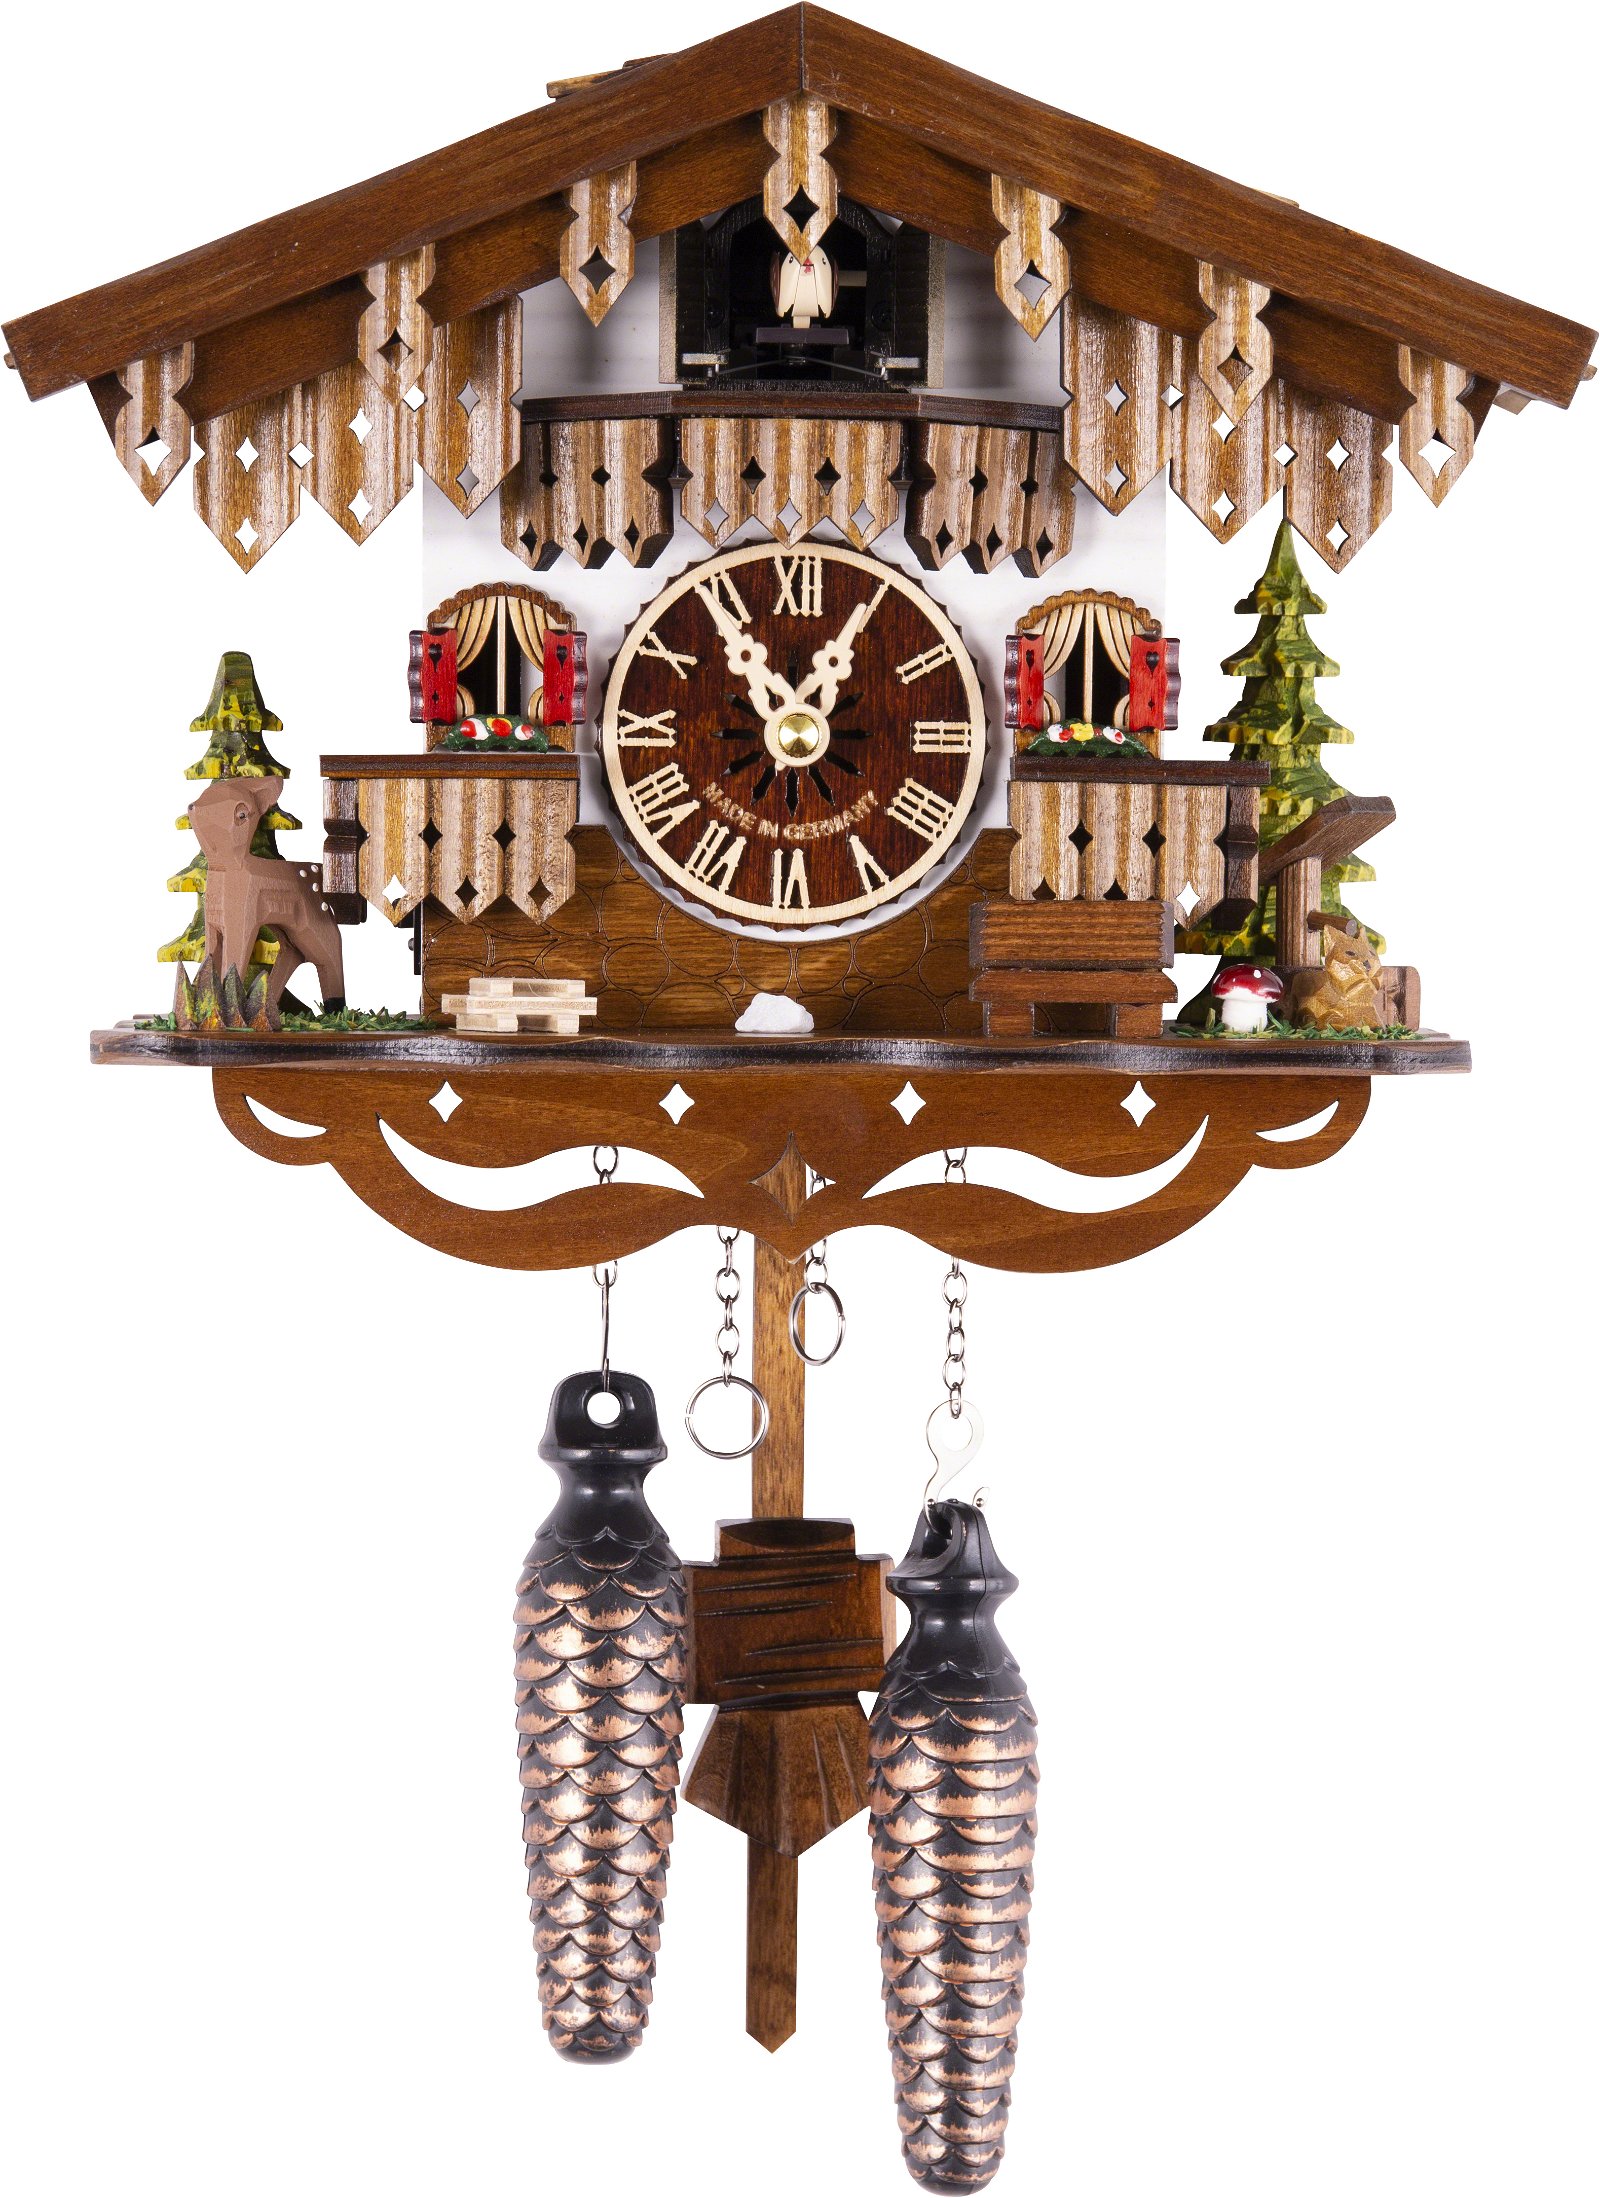 Kuckucksuhr Chalet-Stil Quarz-Uhrwerk 22cm von Engstler